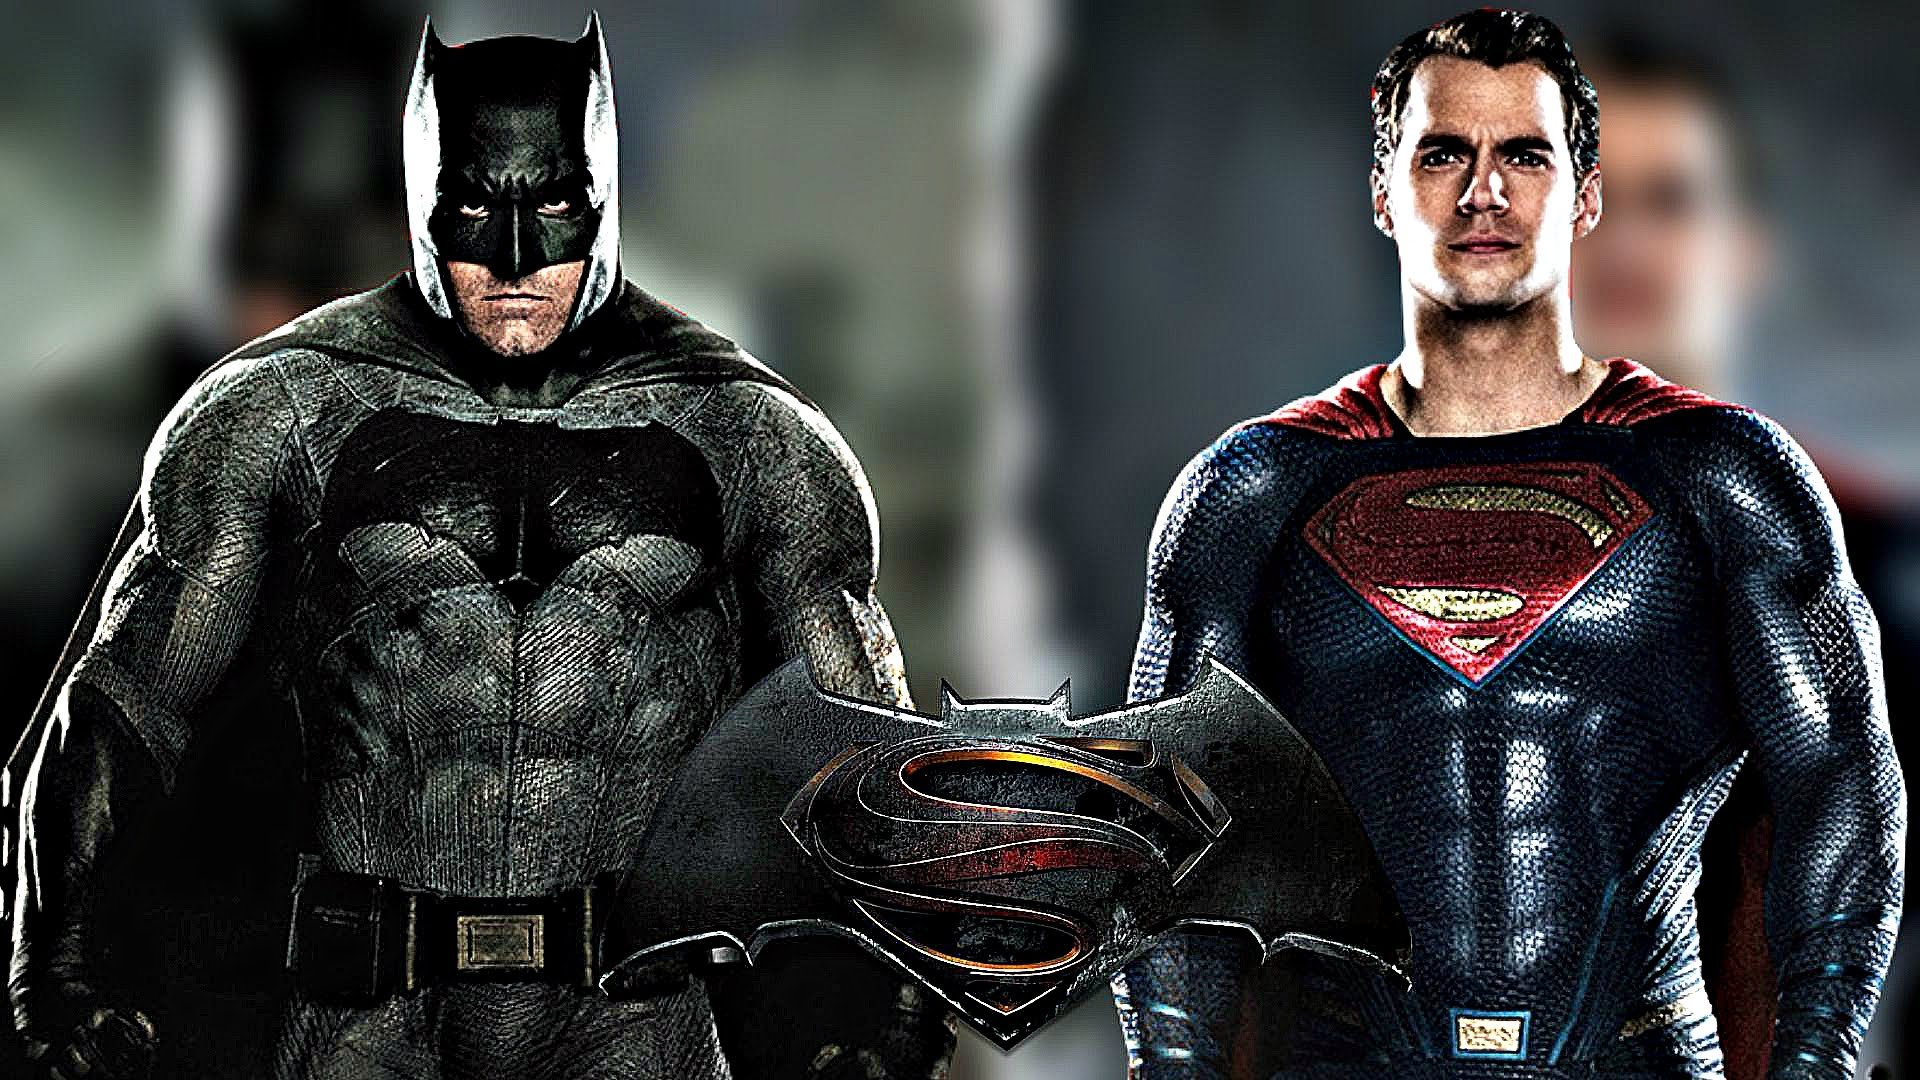 download batman vs superman soundtrack download